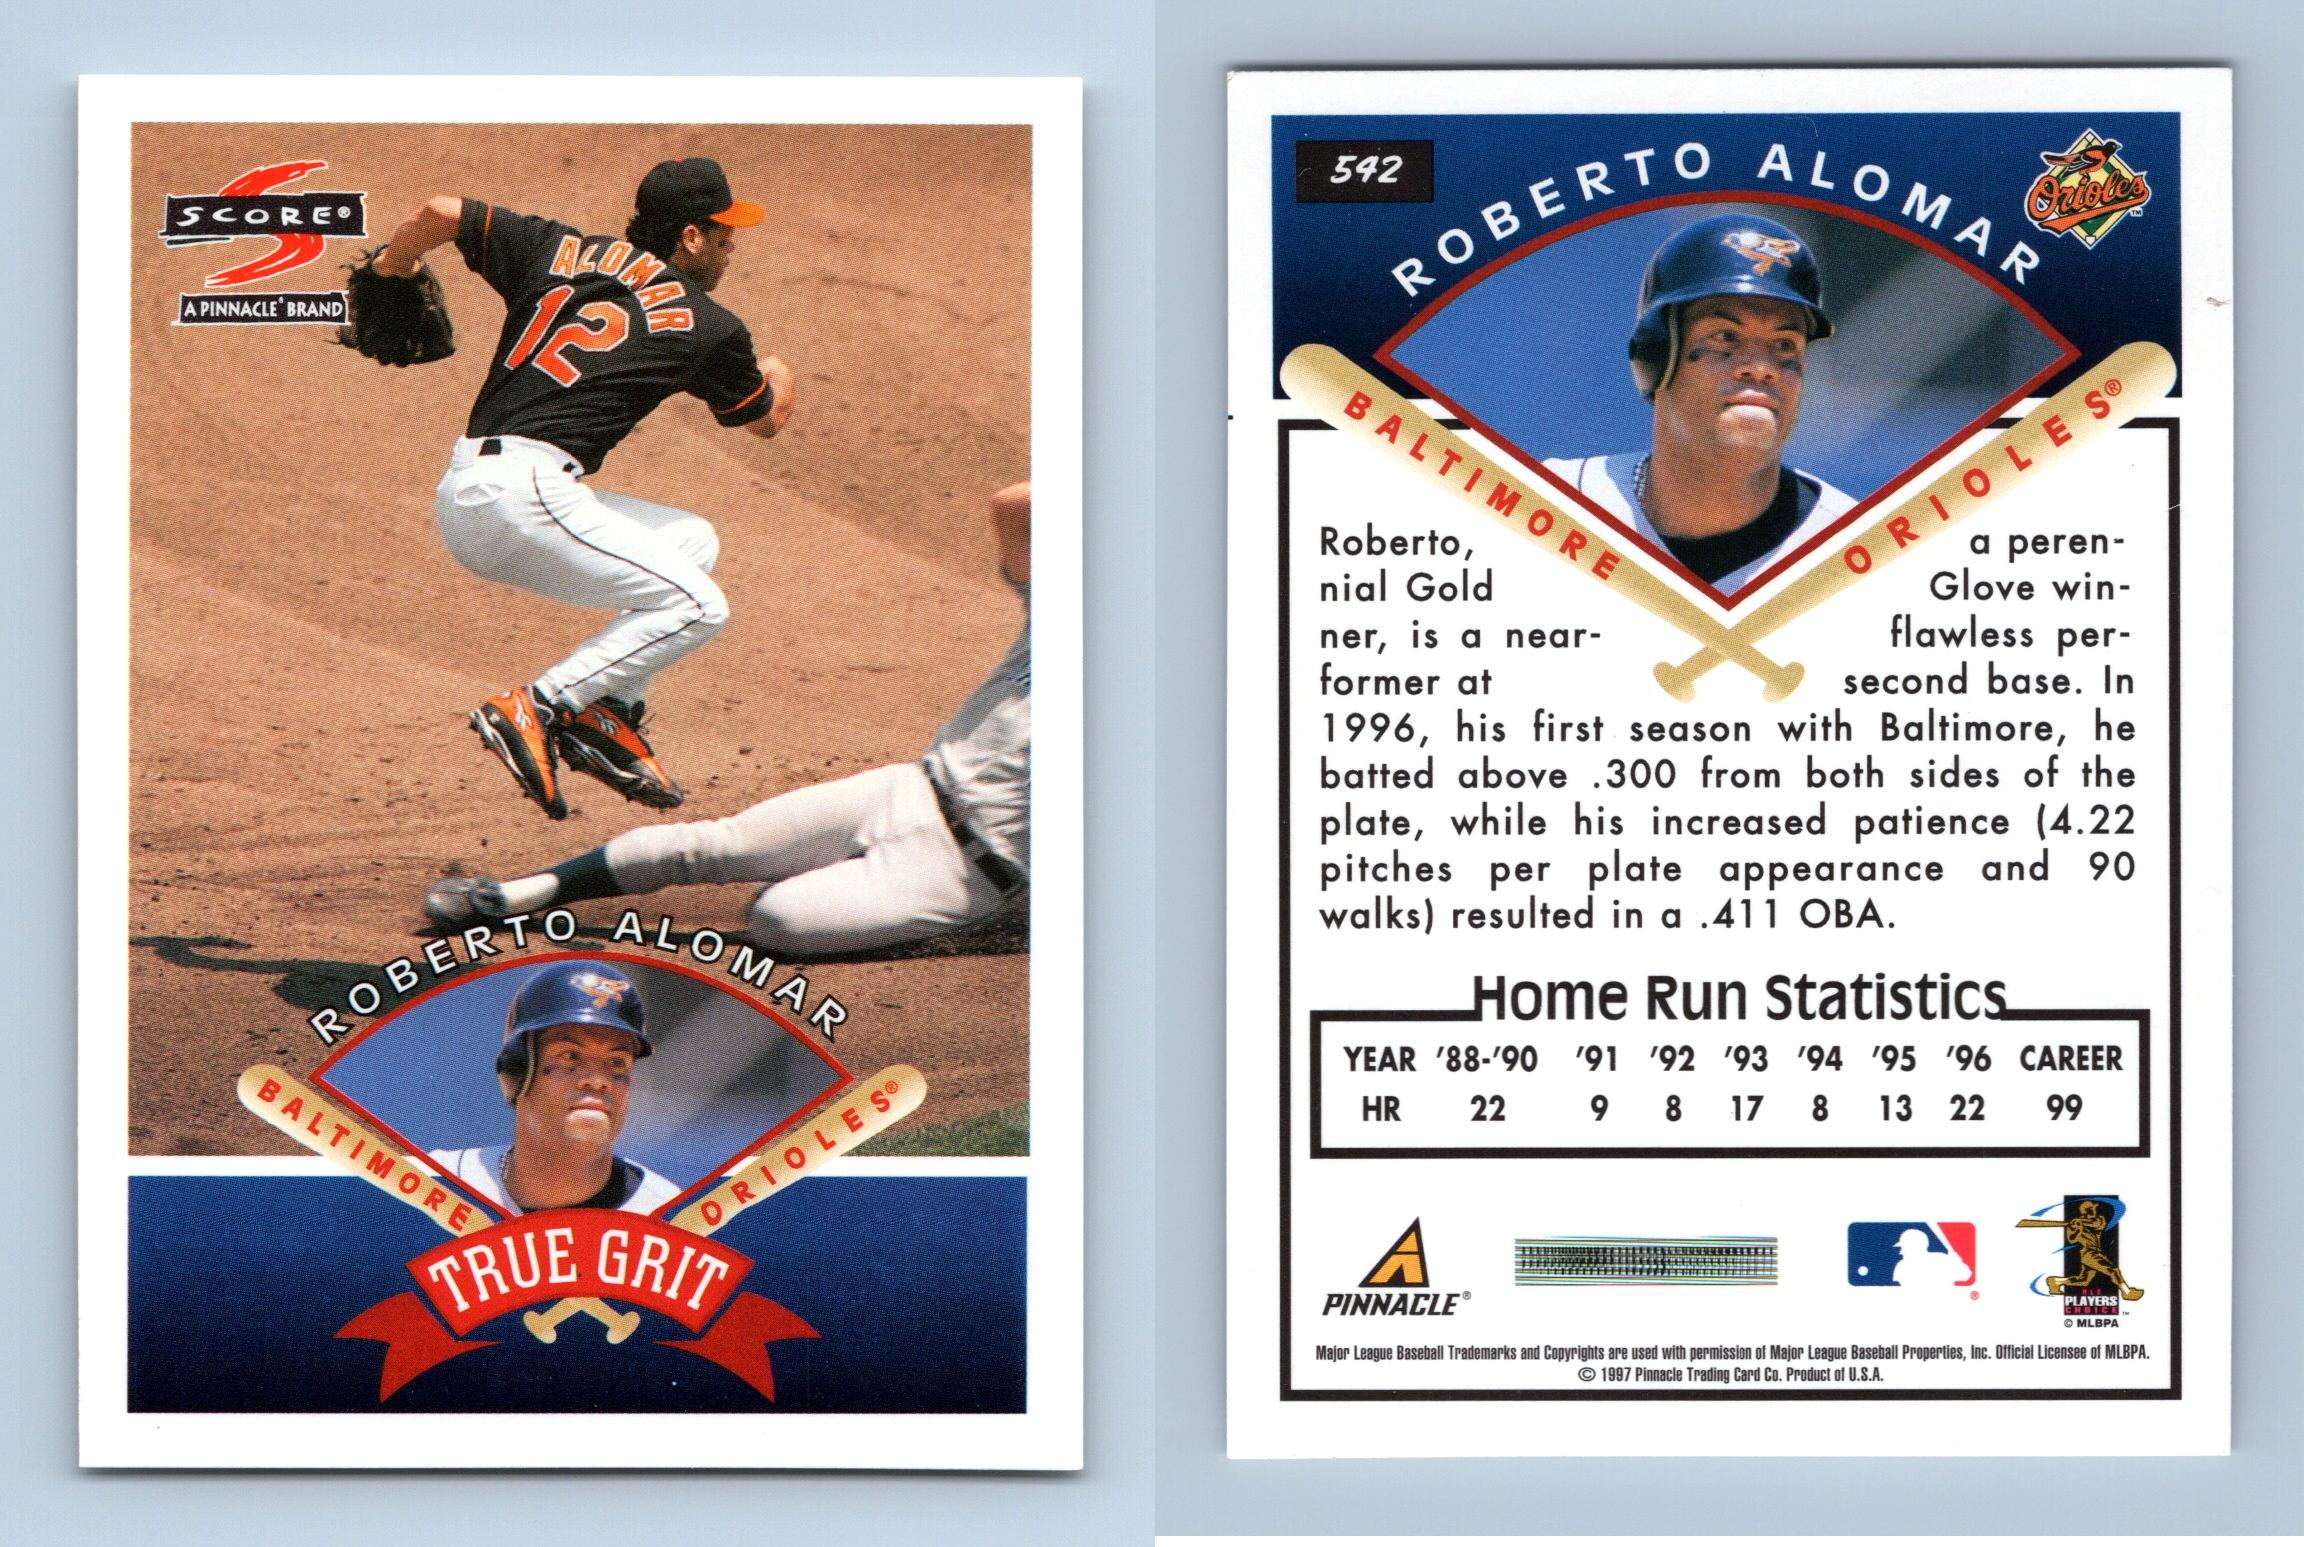 Roberto Alomar - Orioles #542 Score 1997 Baseball Trading Card